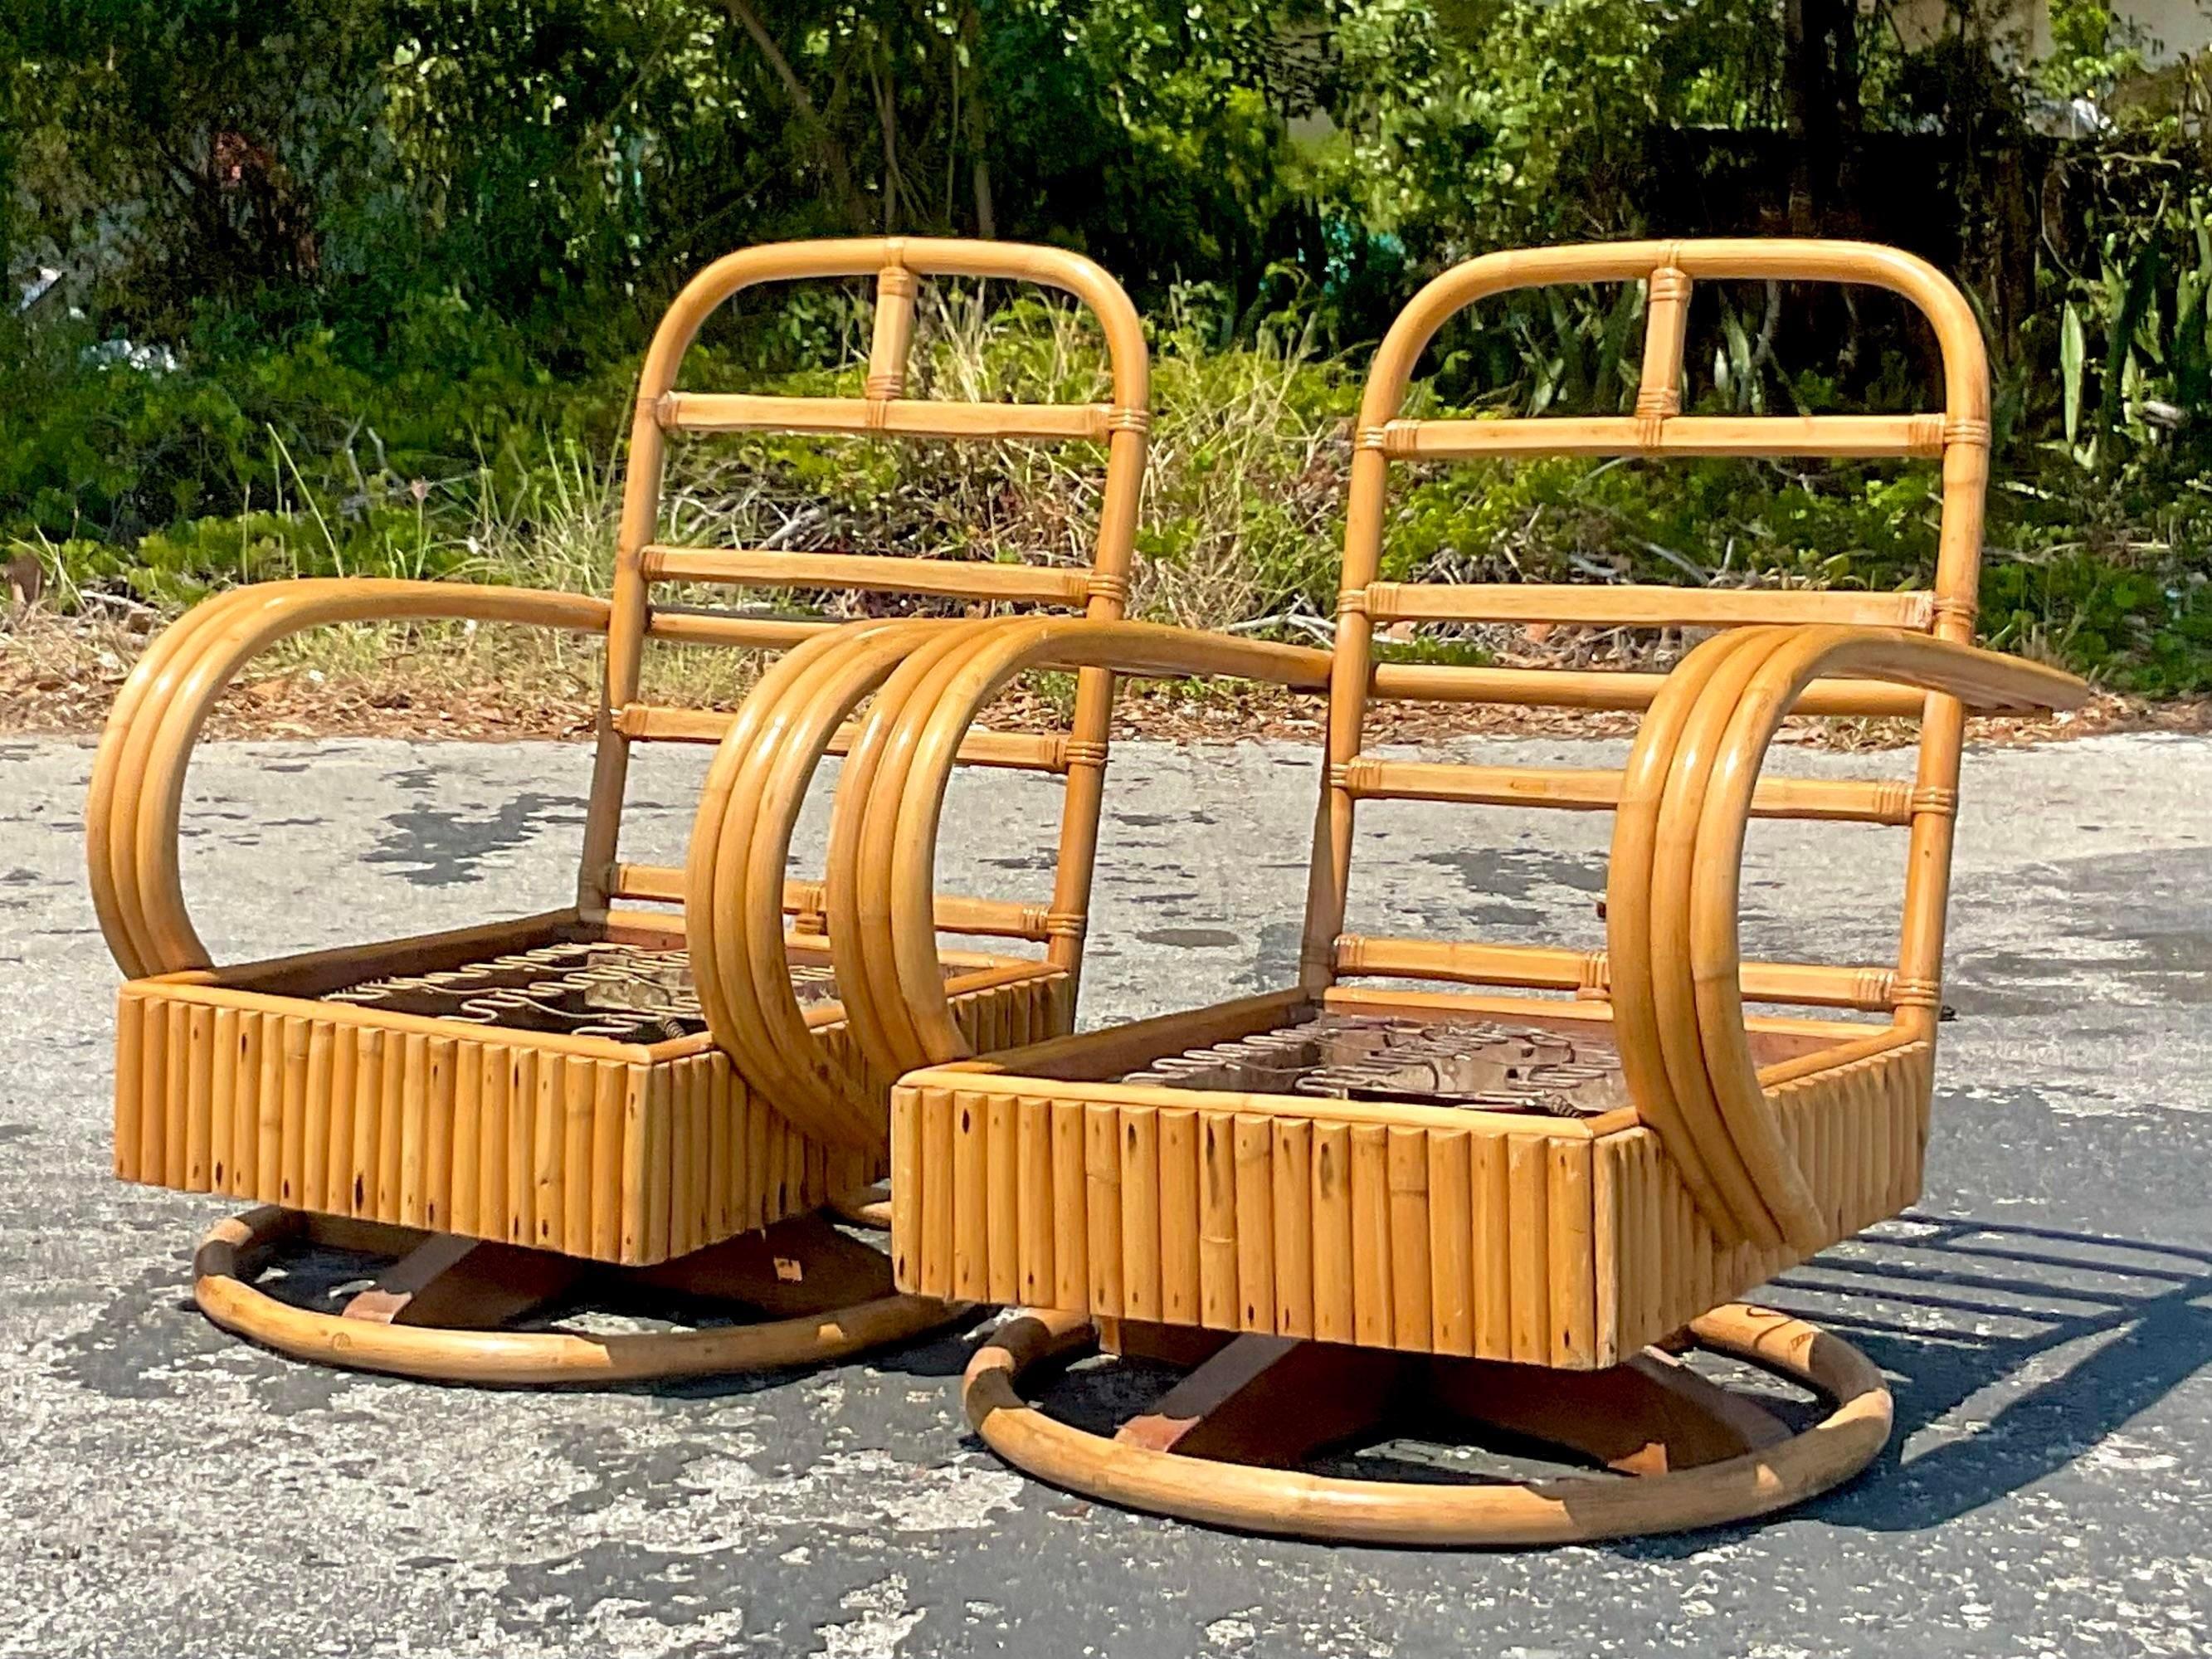 Une fantastique paire de chaises pivotantes Vintage By. De beaux cadres d'époque avec une épaisse bande de rotin. Un profil chic avec la belle patine du temps. Acquis d'une propriété de Palm Beach.